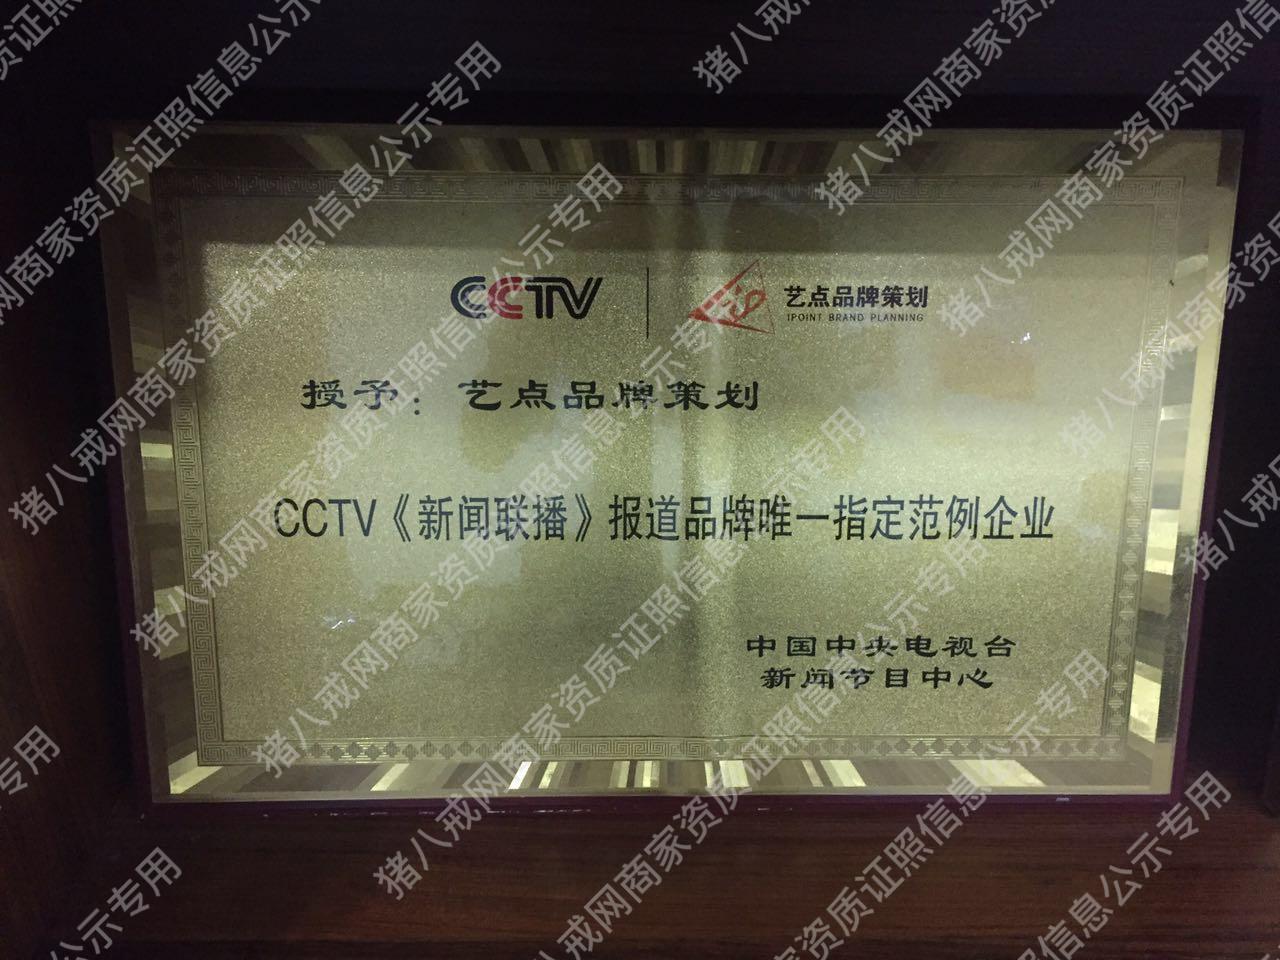 CCTV报道品牌唯一指定范例企业